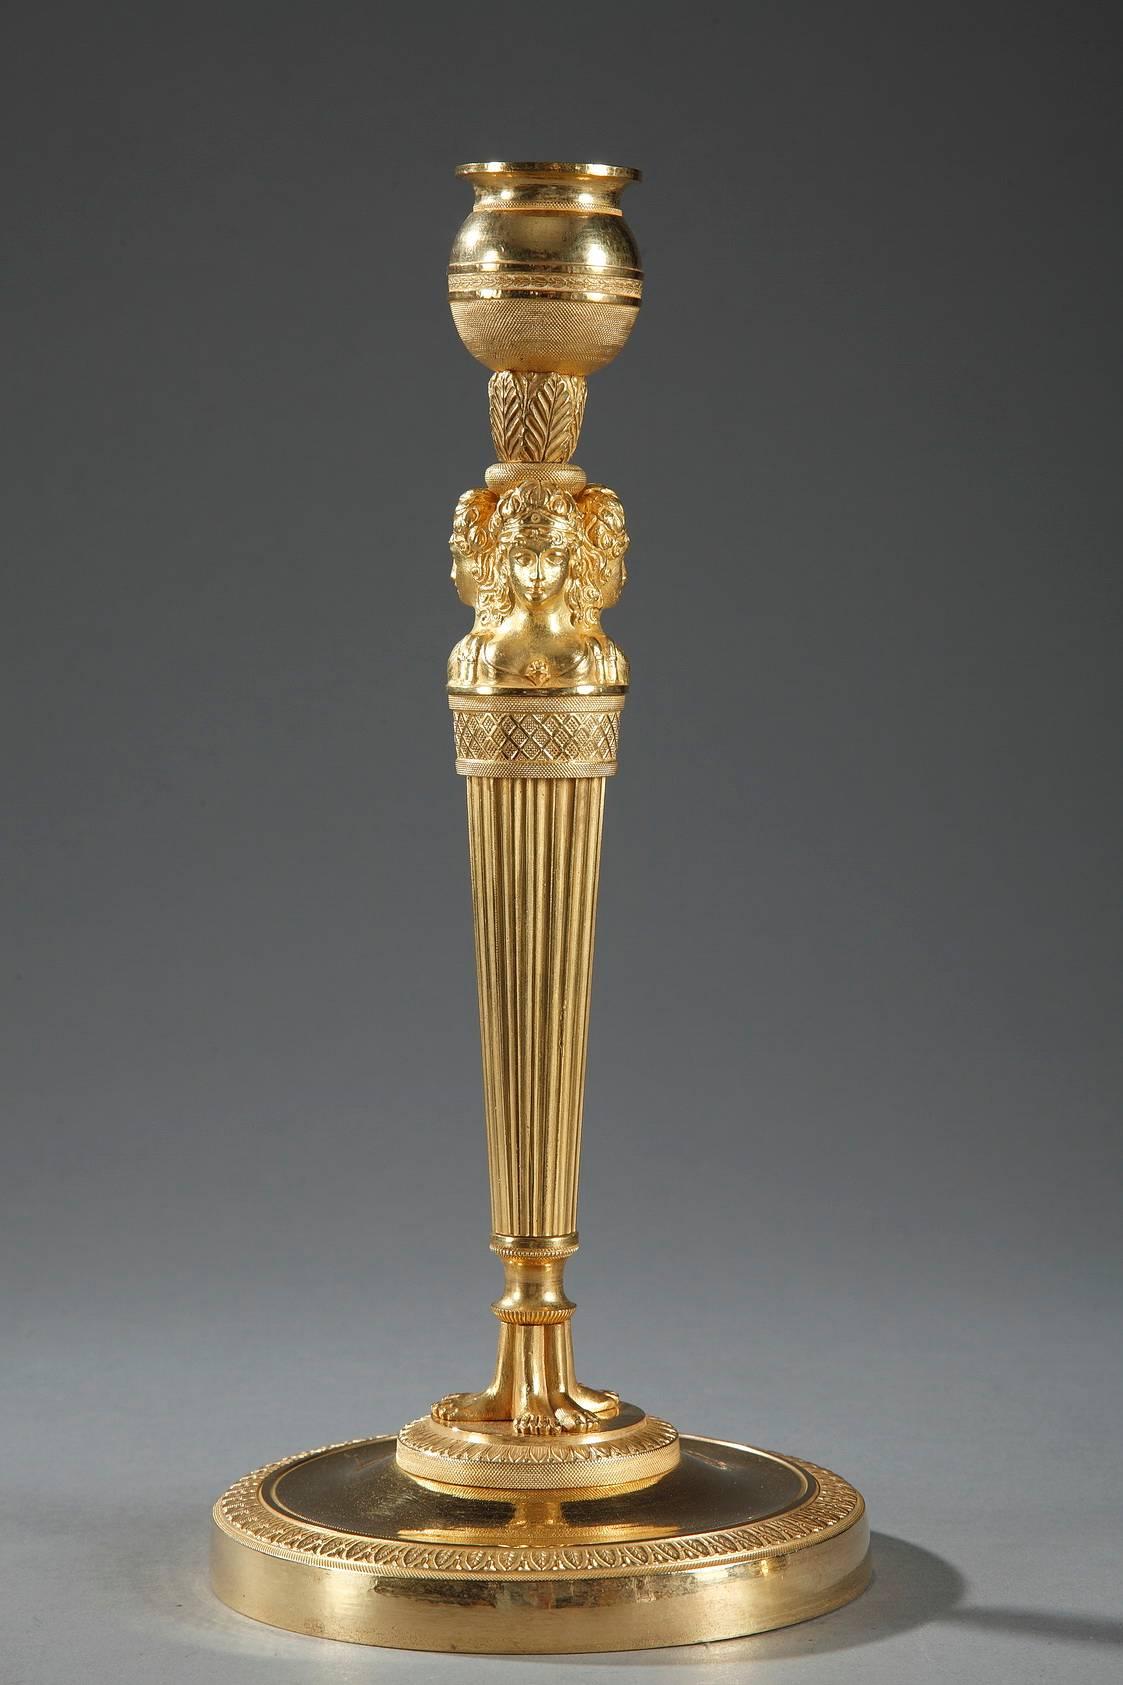 Paire de chandeliers en bronze doré et sculpté d'époque Empire. La douille est sculptée de manière très complexe avec des perles et du feuillage. Sous la douille, trois bustes féminins sont orientés vers l'extérieur et ornent le haut du canon